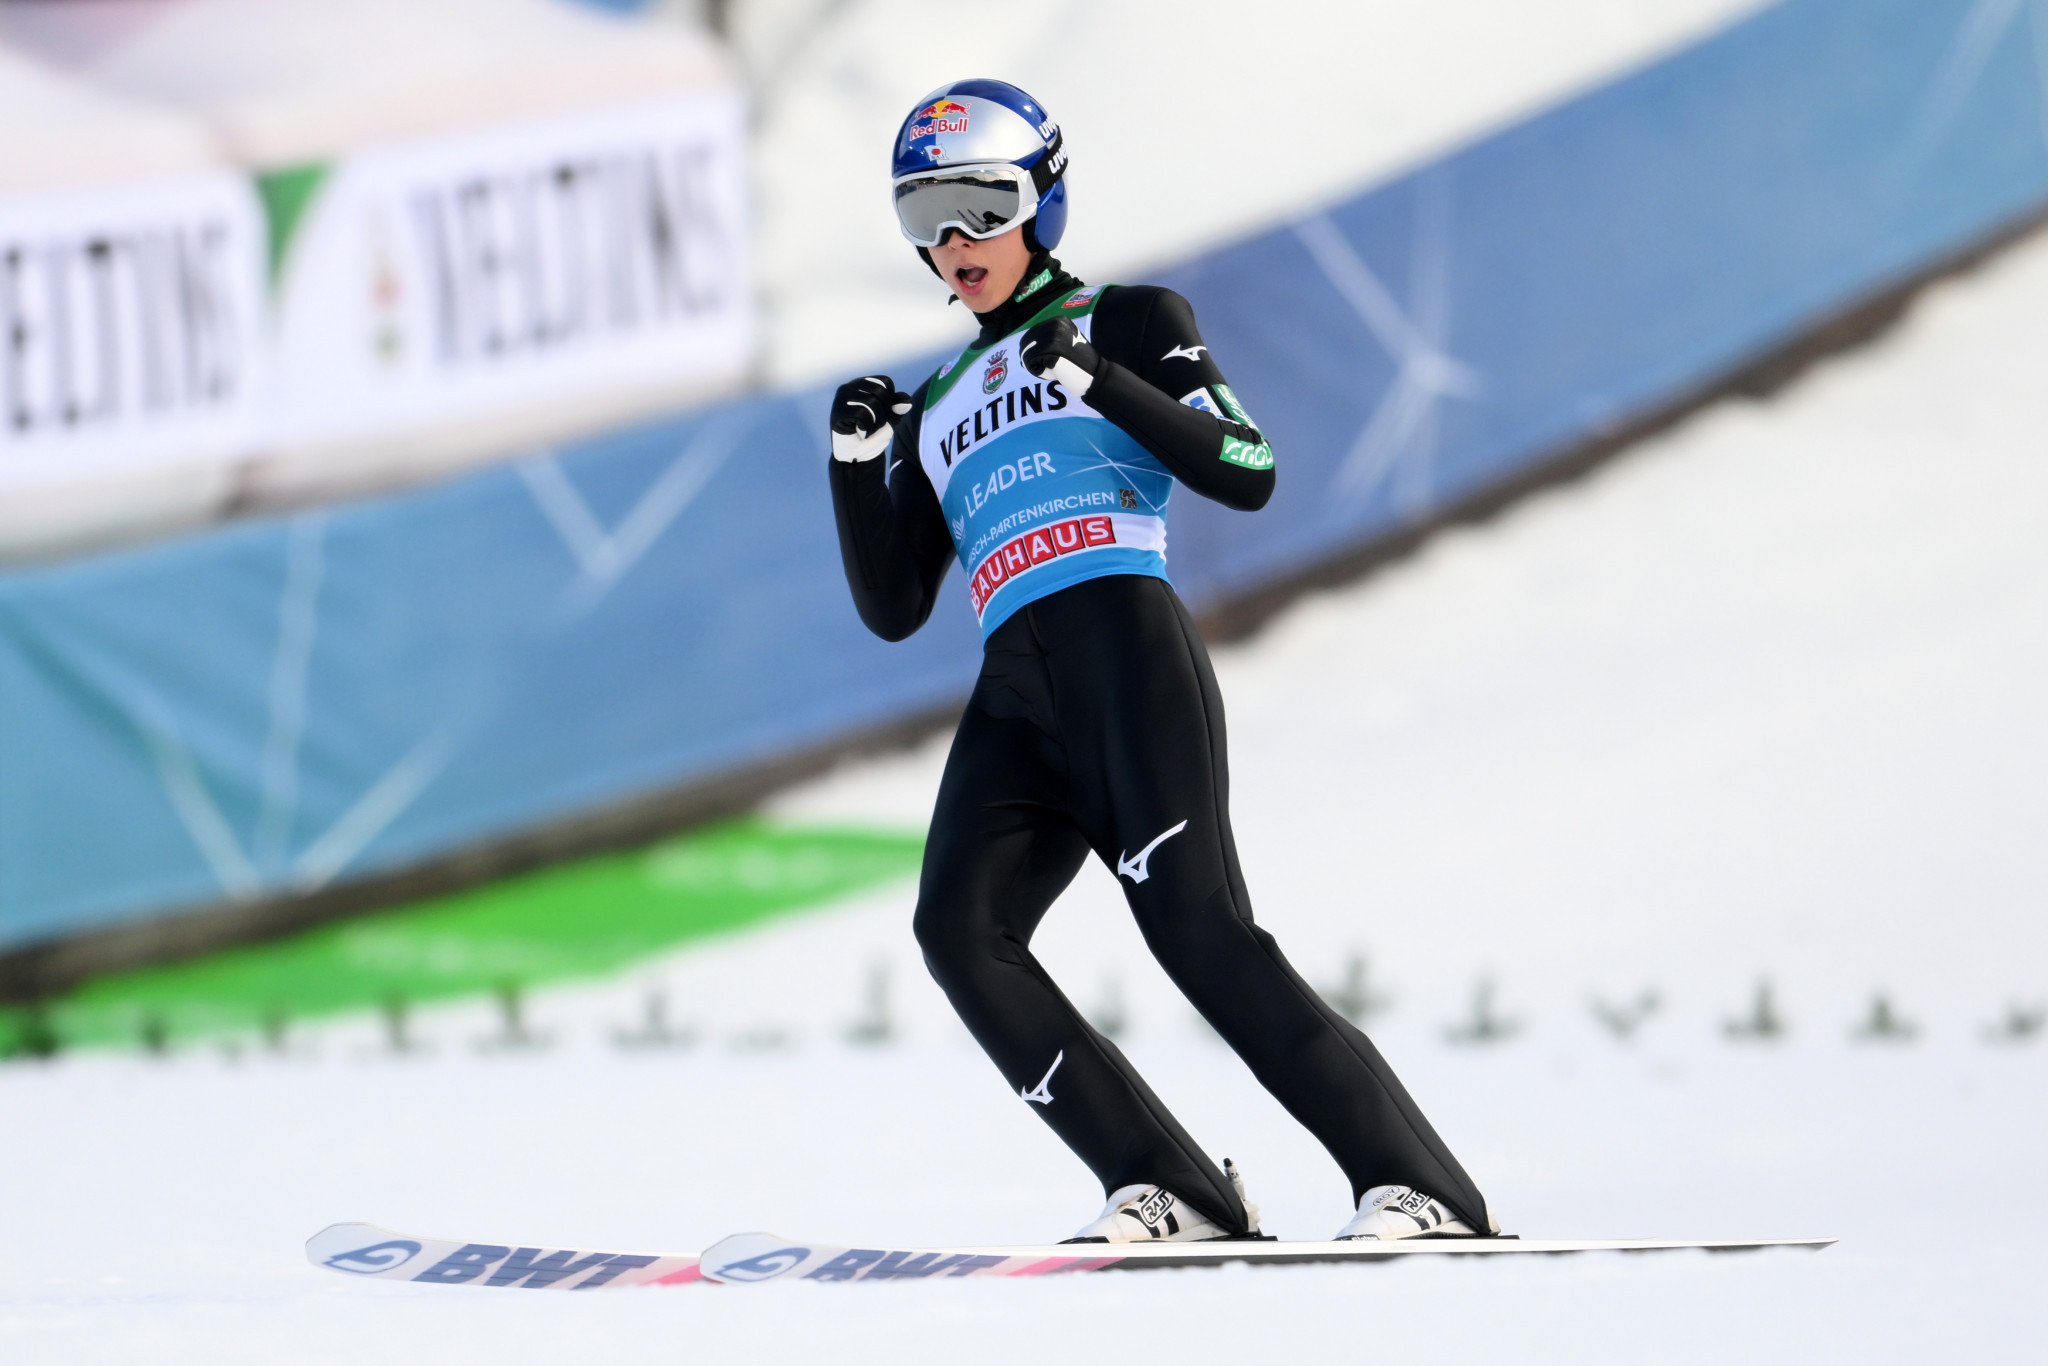 Ryoyu Kobayashi won his third consecutive FIS Ski Jumping World Cup event ©Getty Images